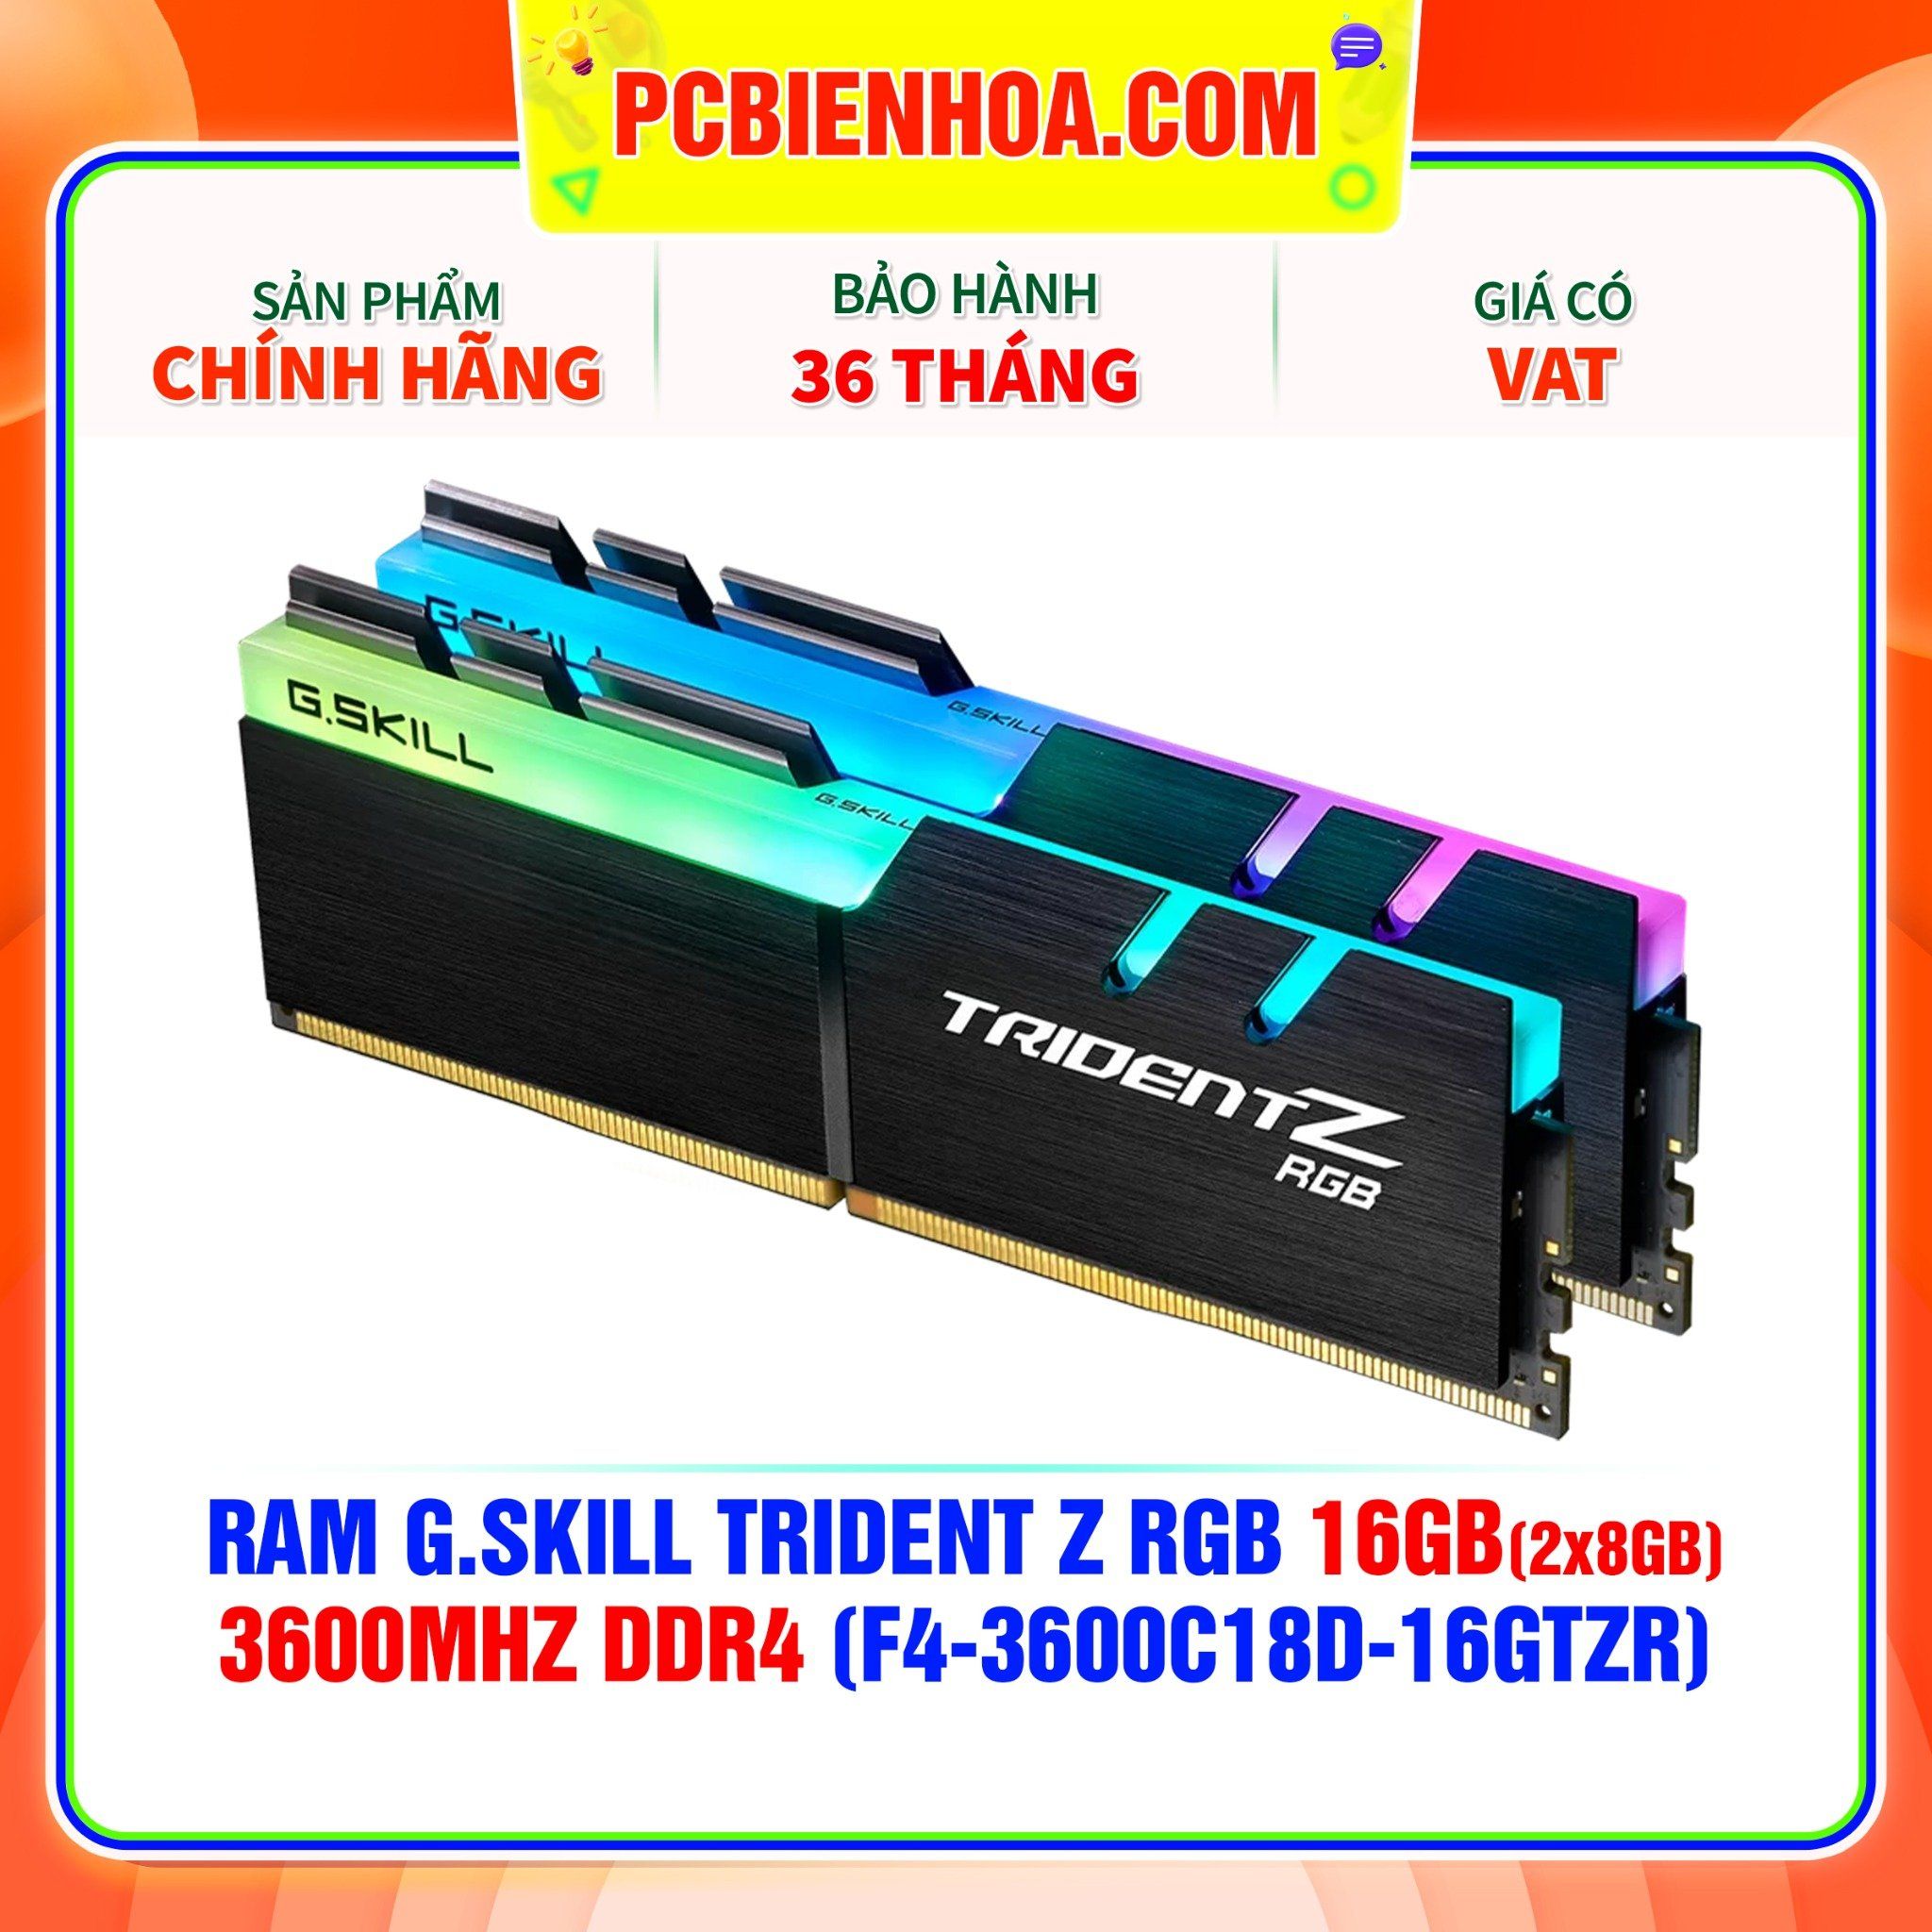  RAM G.SKILL TRIDENT Z RGB 16GB (2x8GB) 3600MHz DDR4 (F4-3600C18D-16GTZR) 